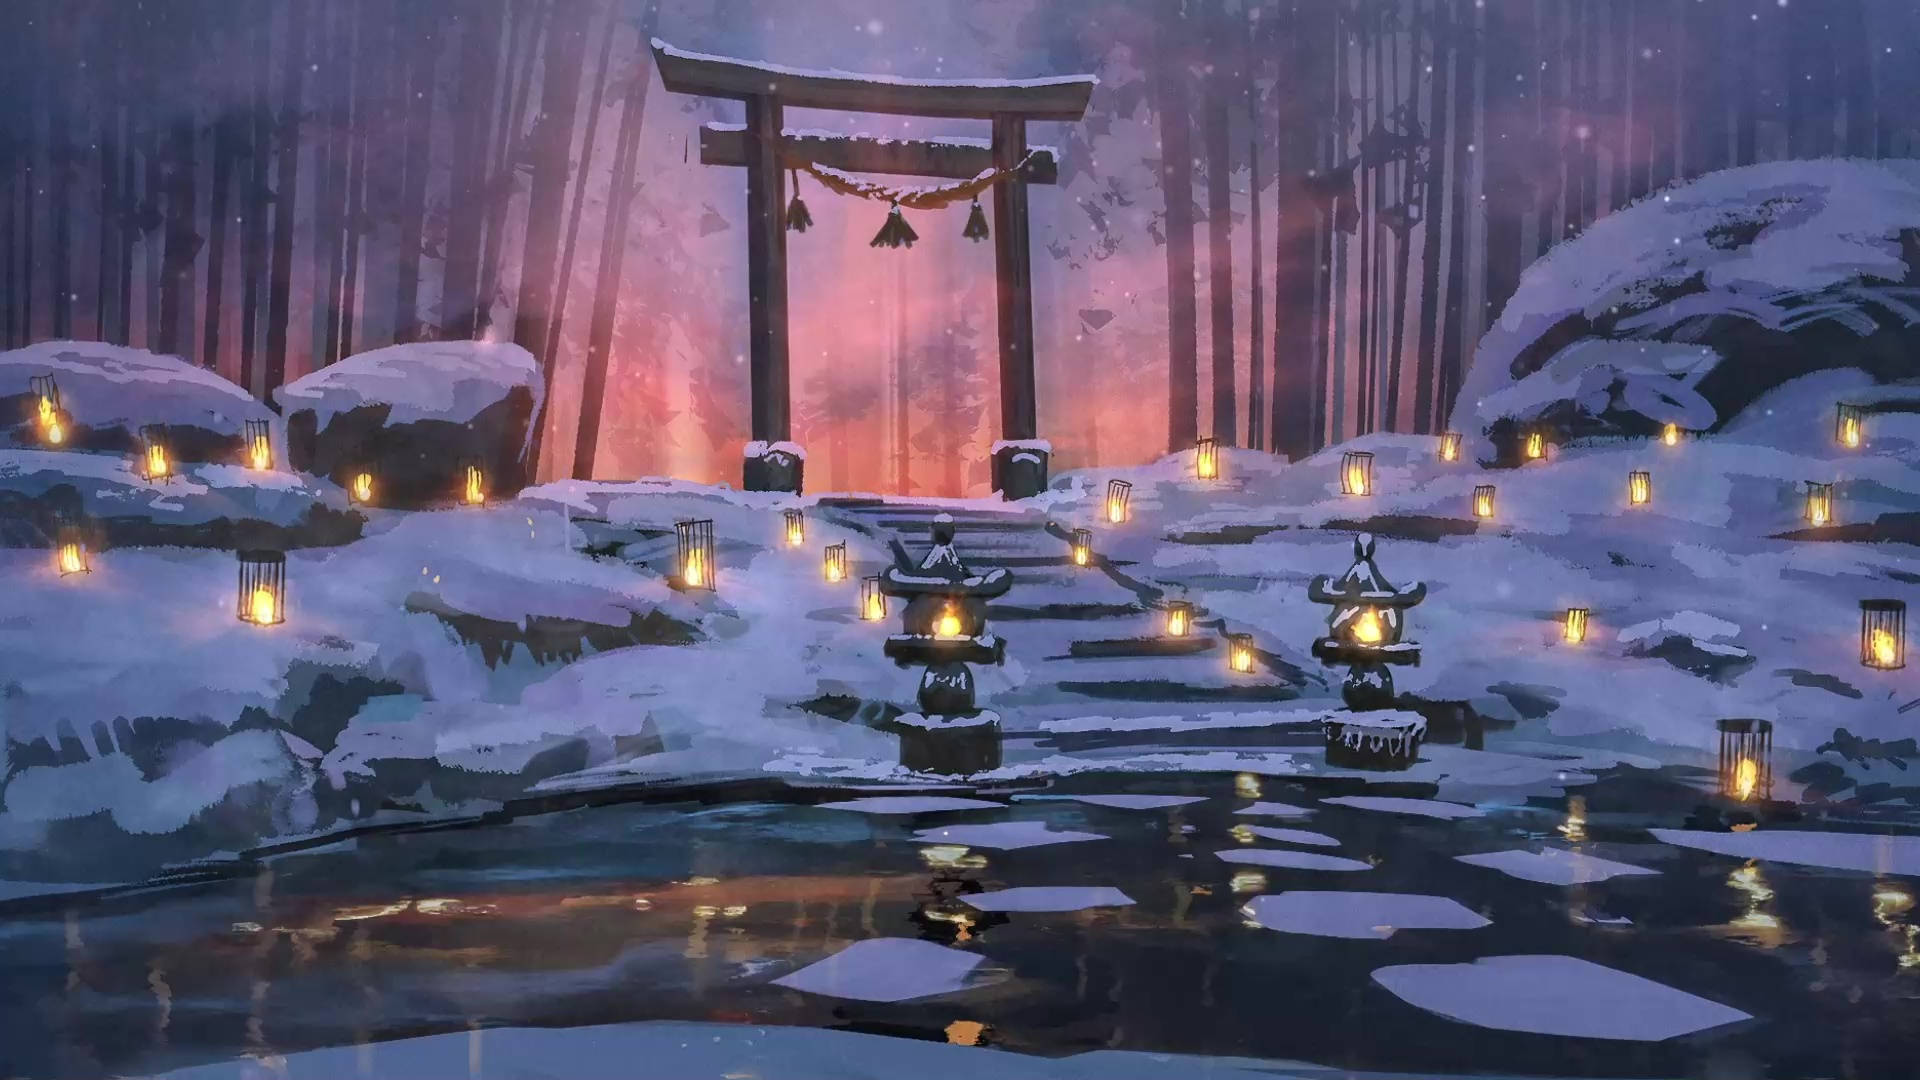 Torii Gate Lantern Art Background